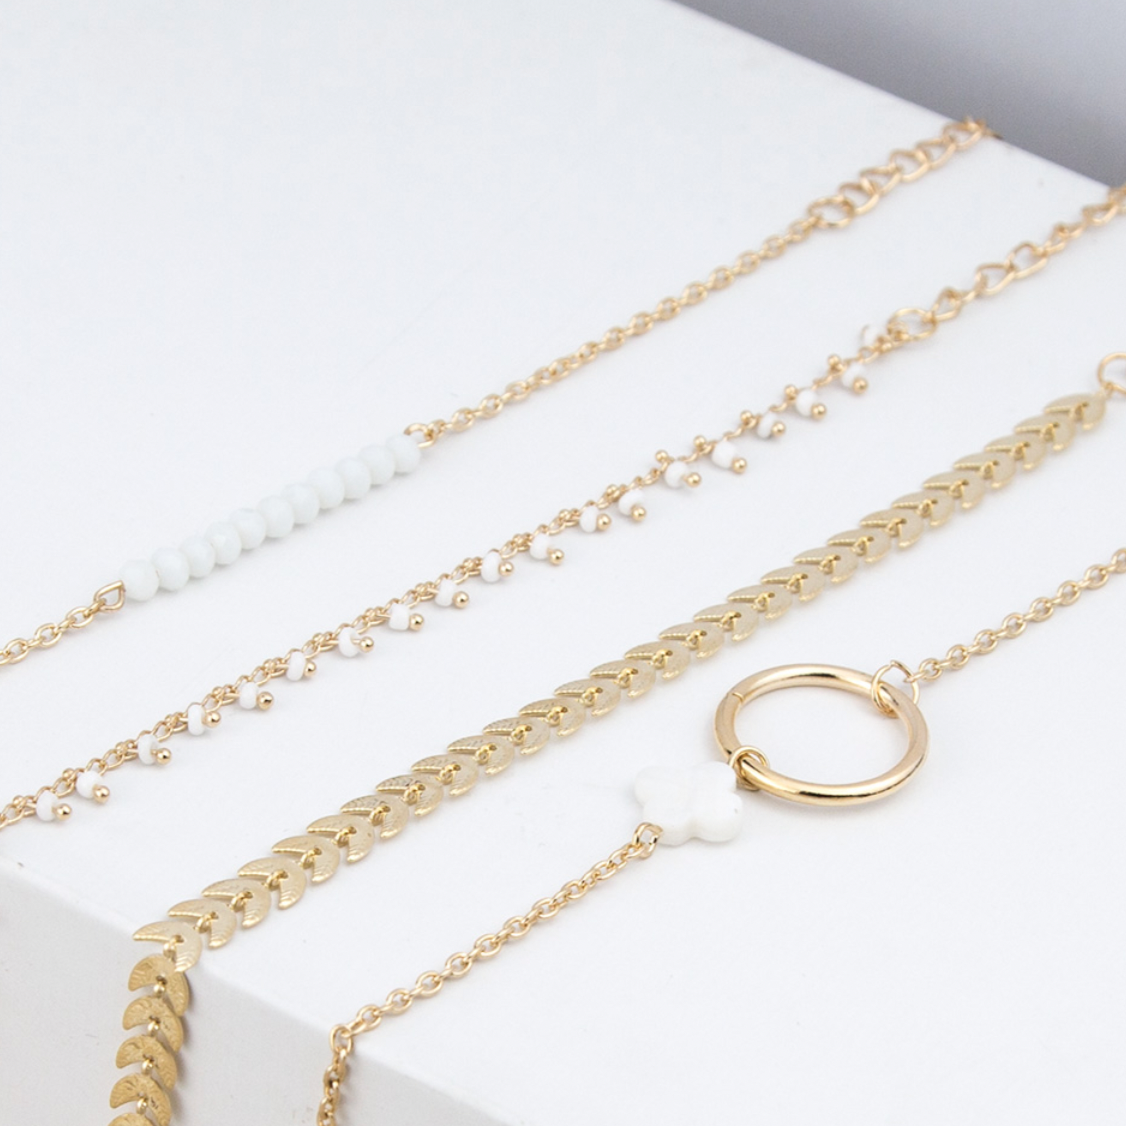 Lot de 4 bracelets dorés feuillage et perles nacrées. Taille des bracelets 17,5 cm + 7 cm.